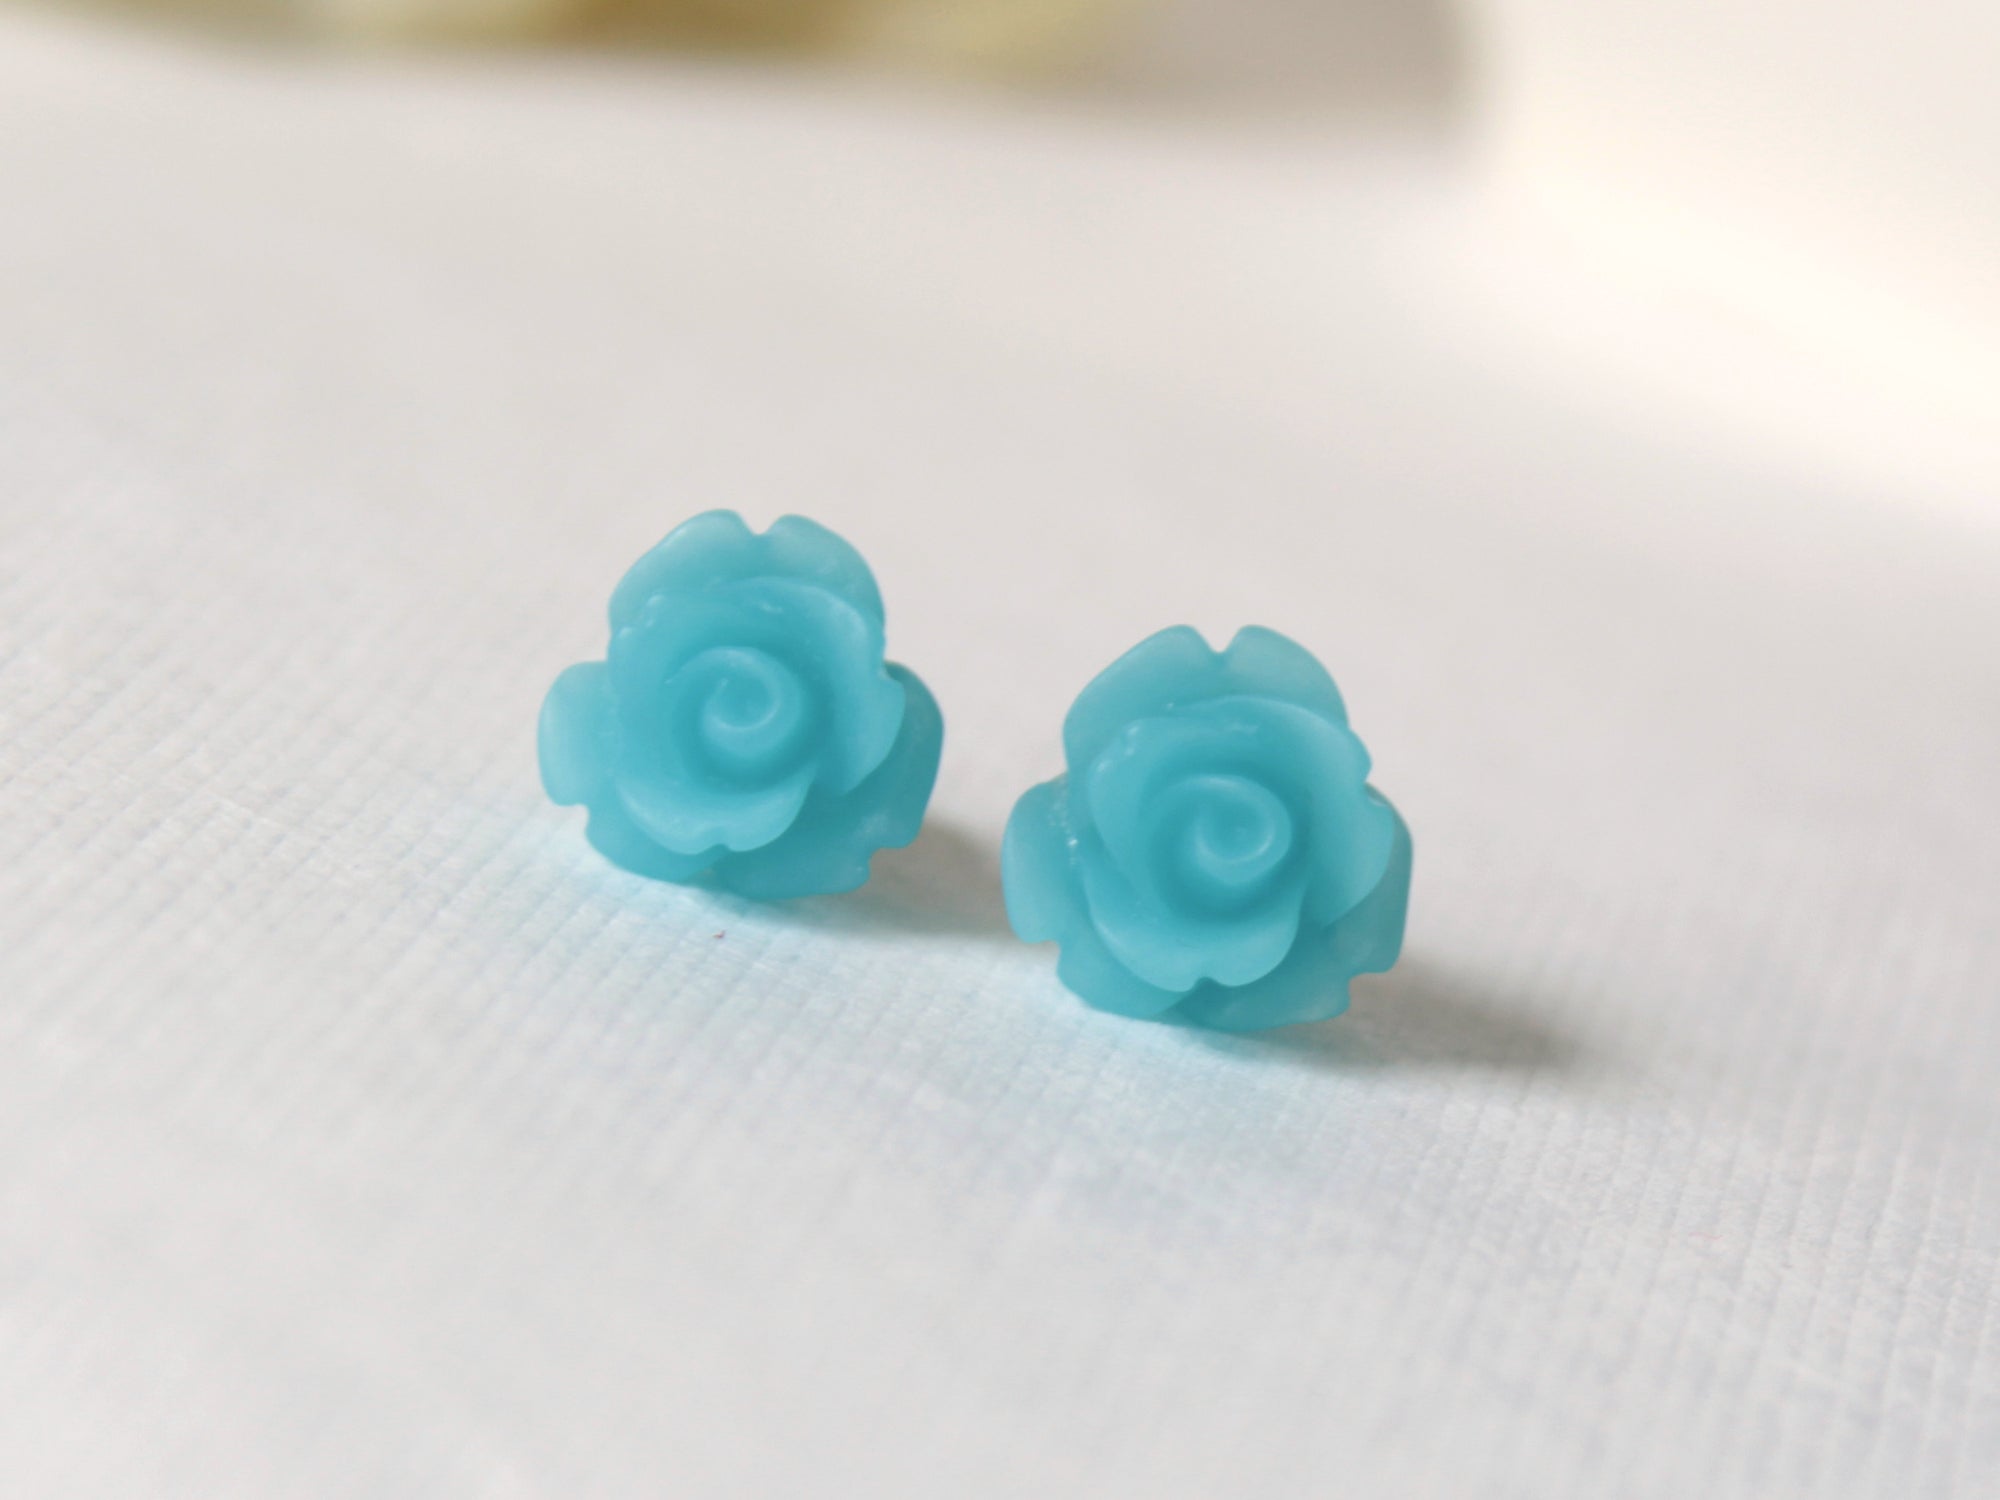 Single Bloom Rose Stud Earrings in Frosted Sky Blue